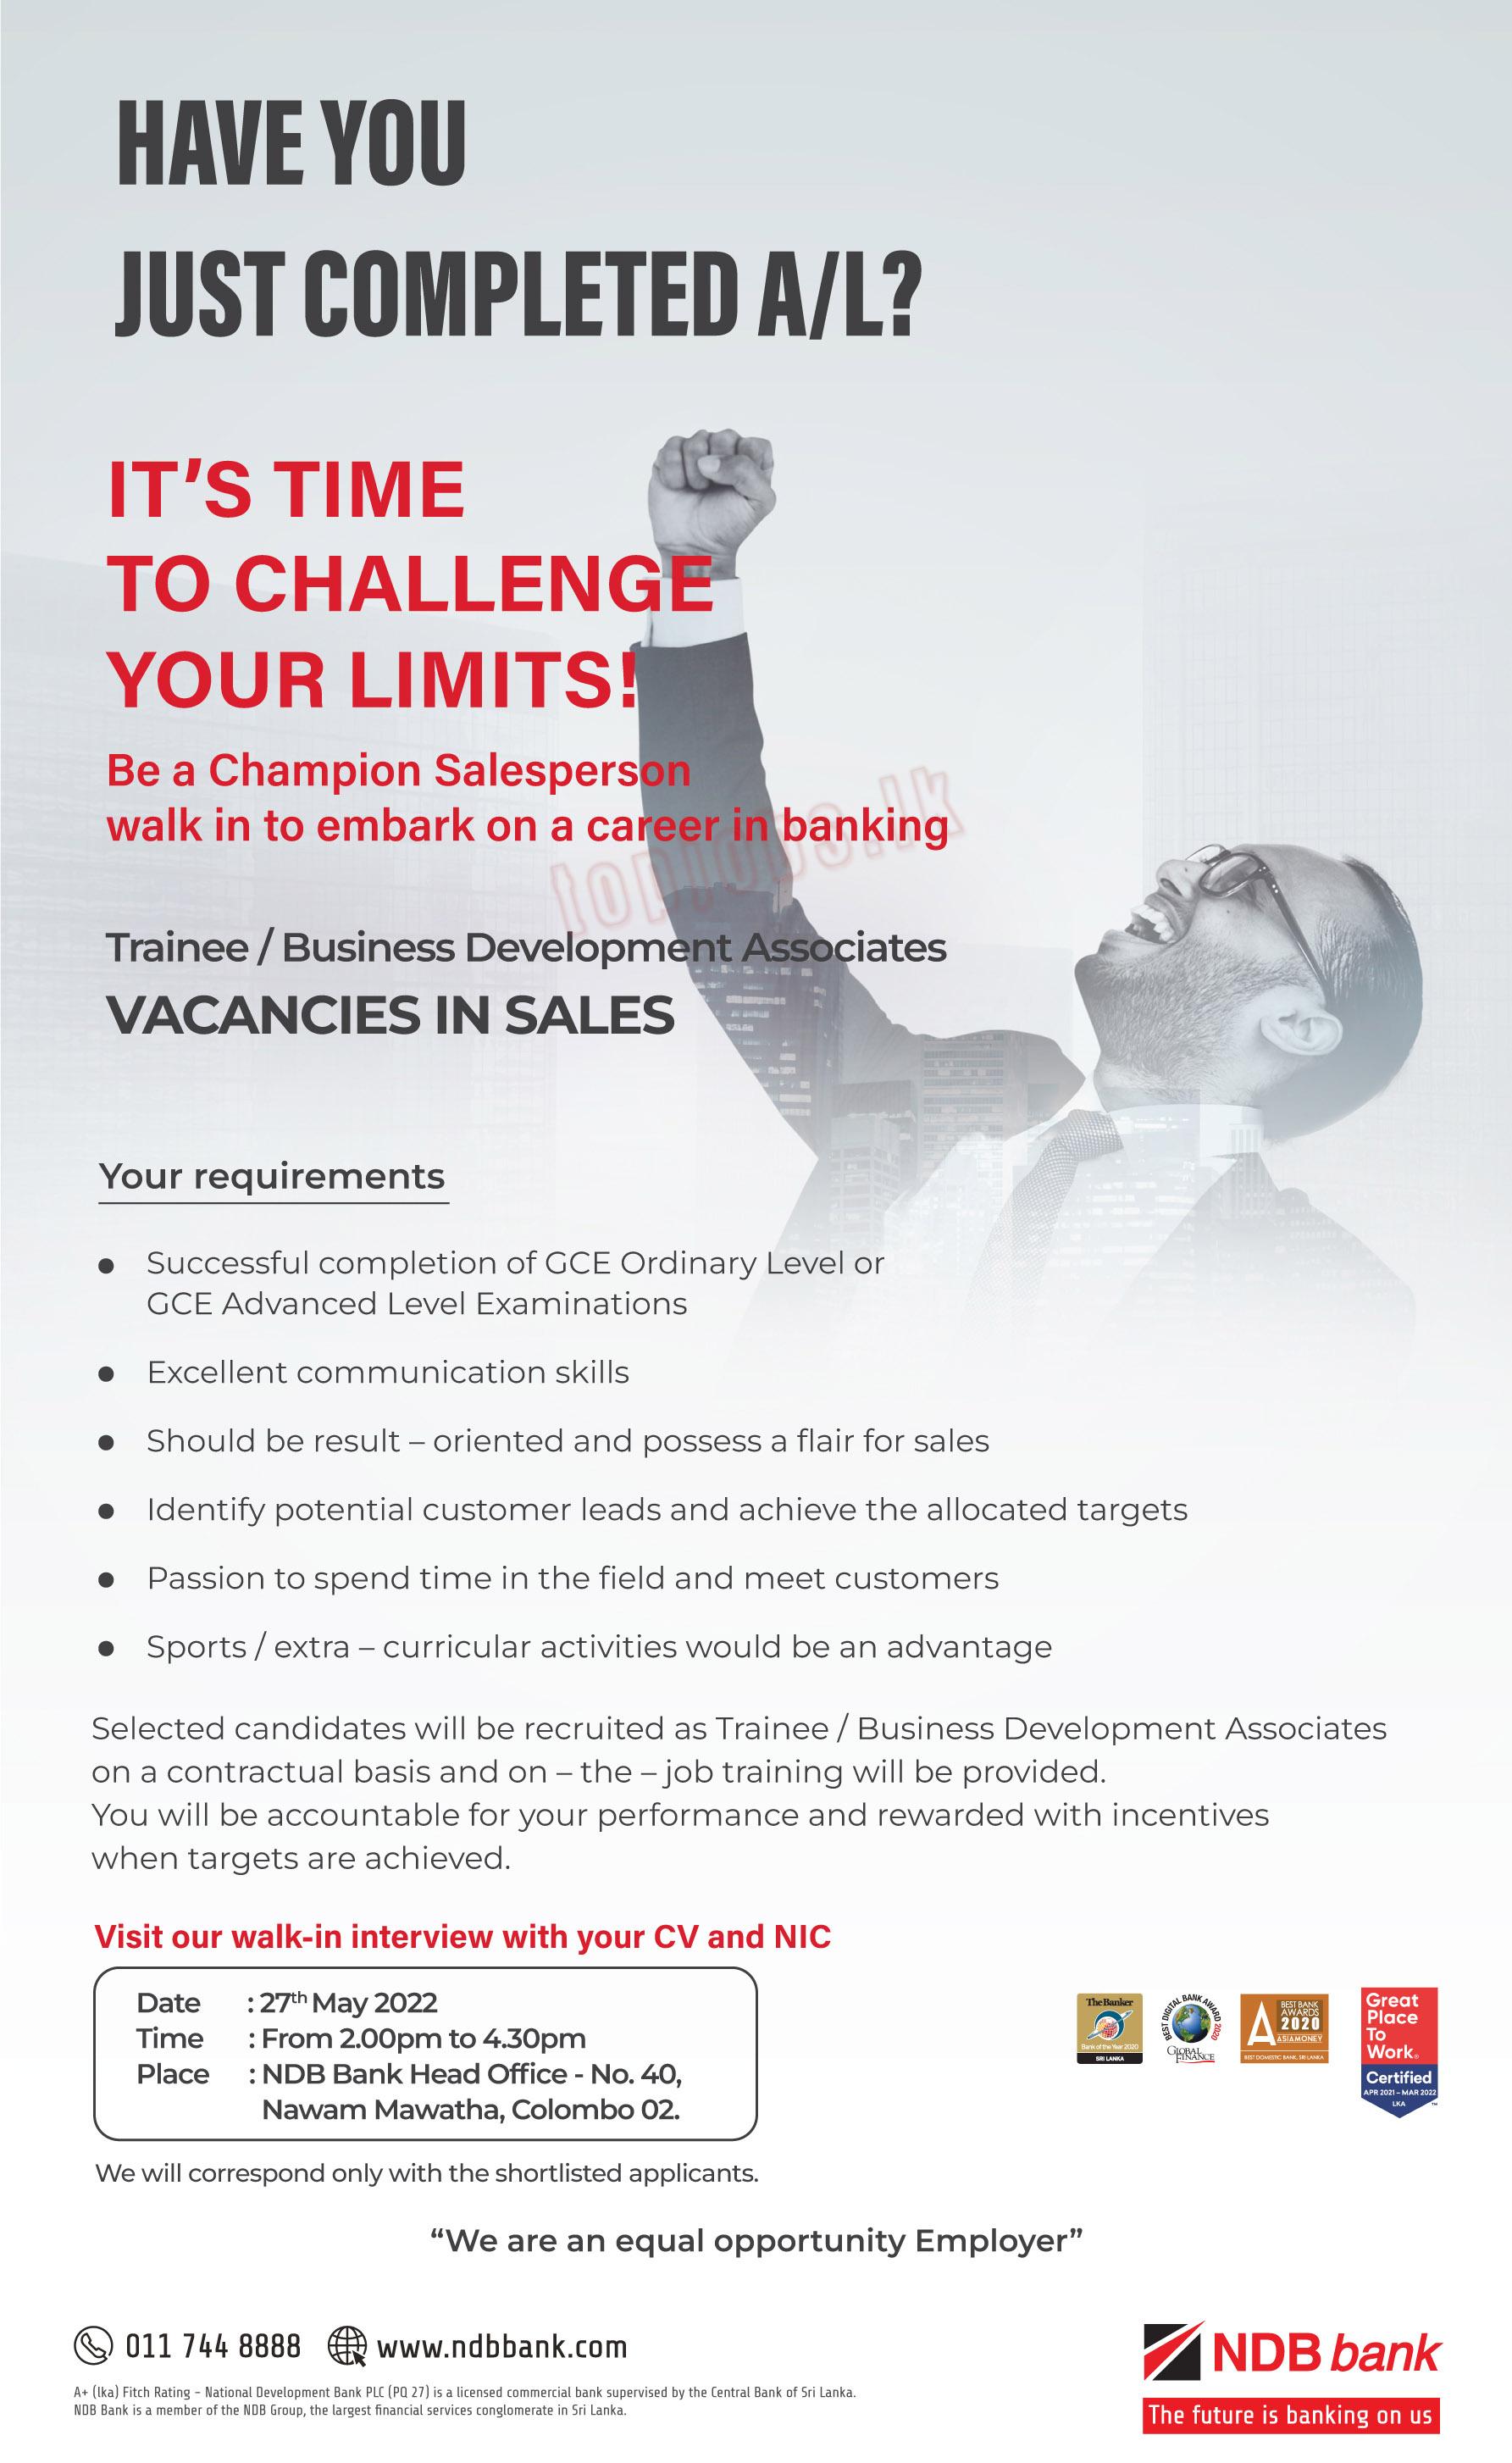 Trainee / Business Development Associates - National Development Bank Jobs Vacancies